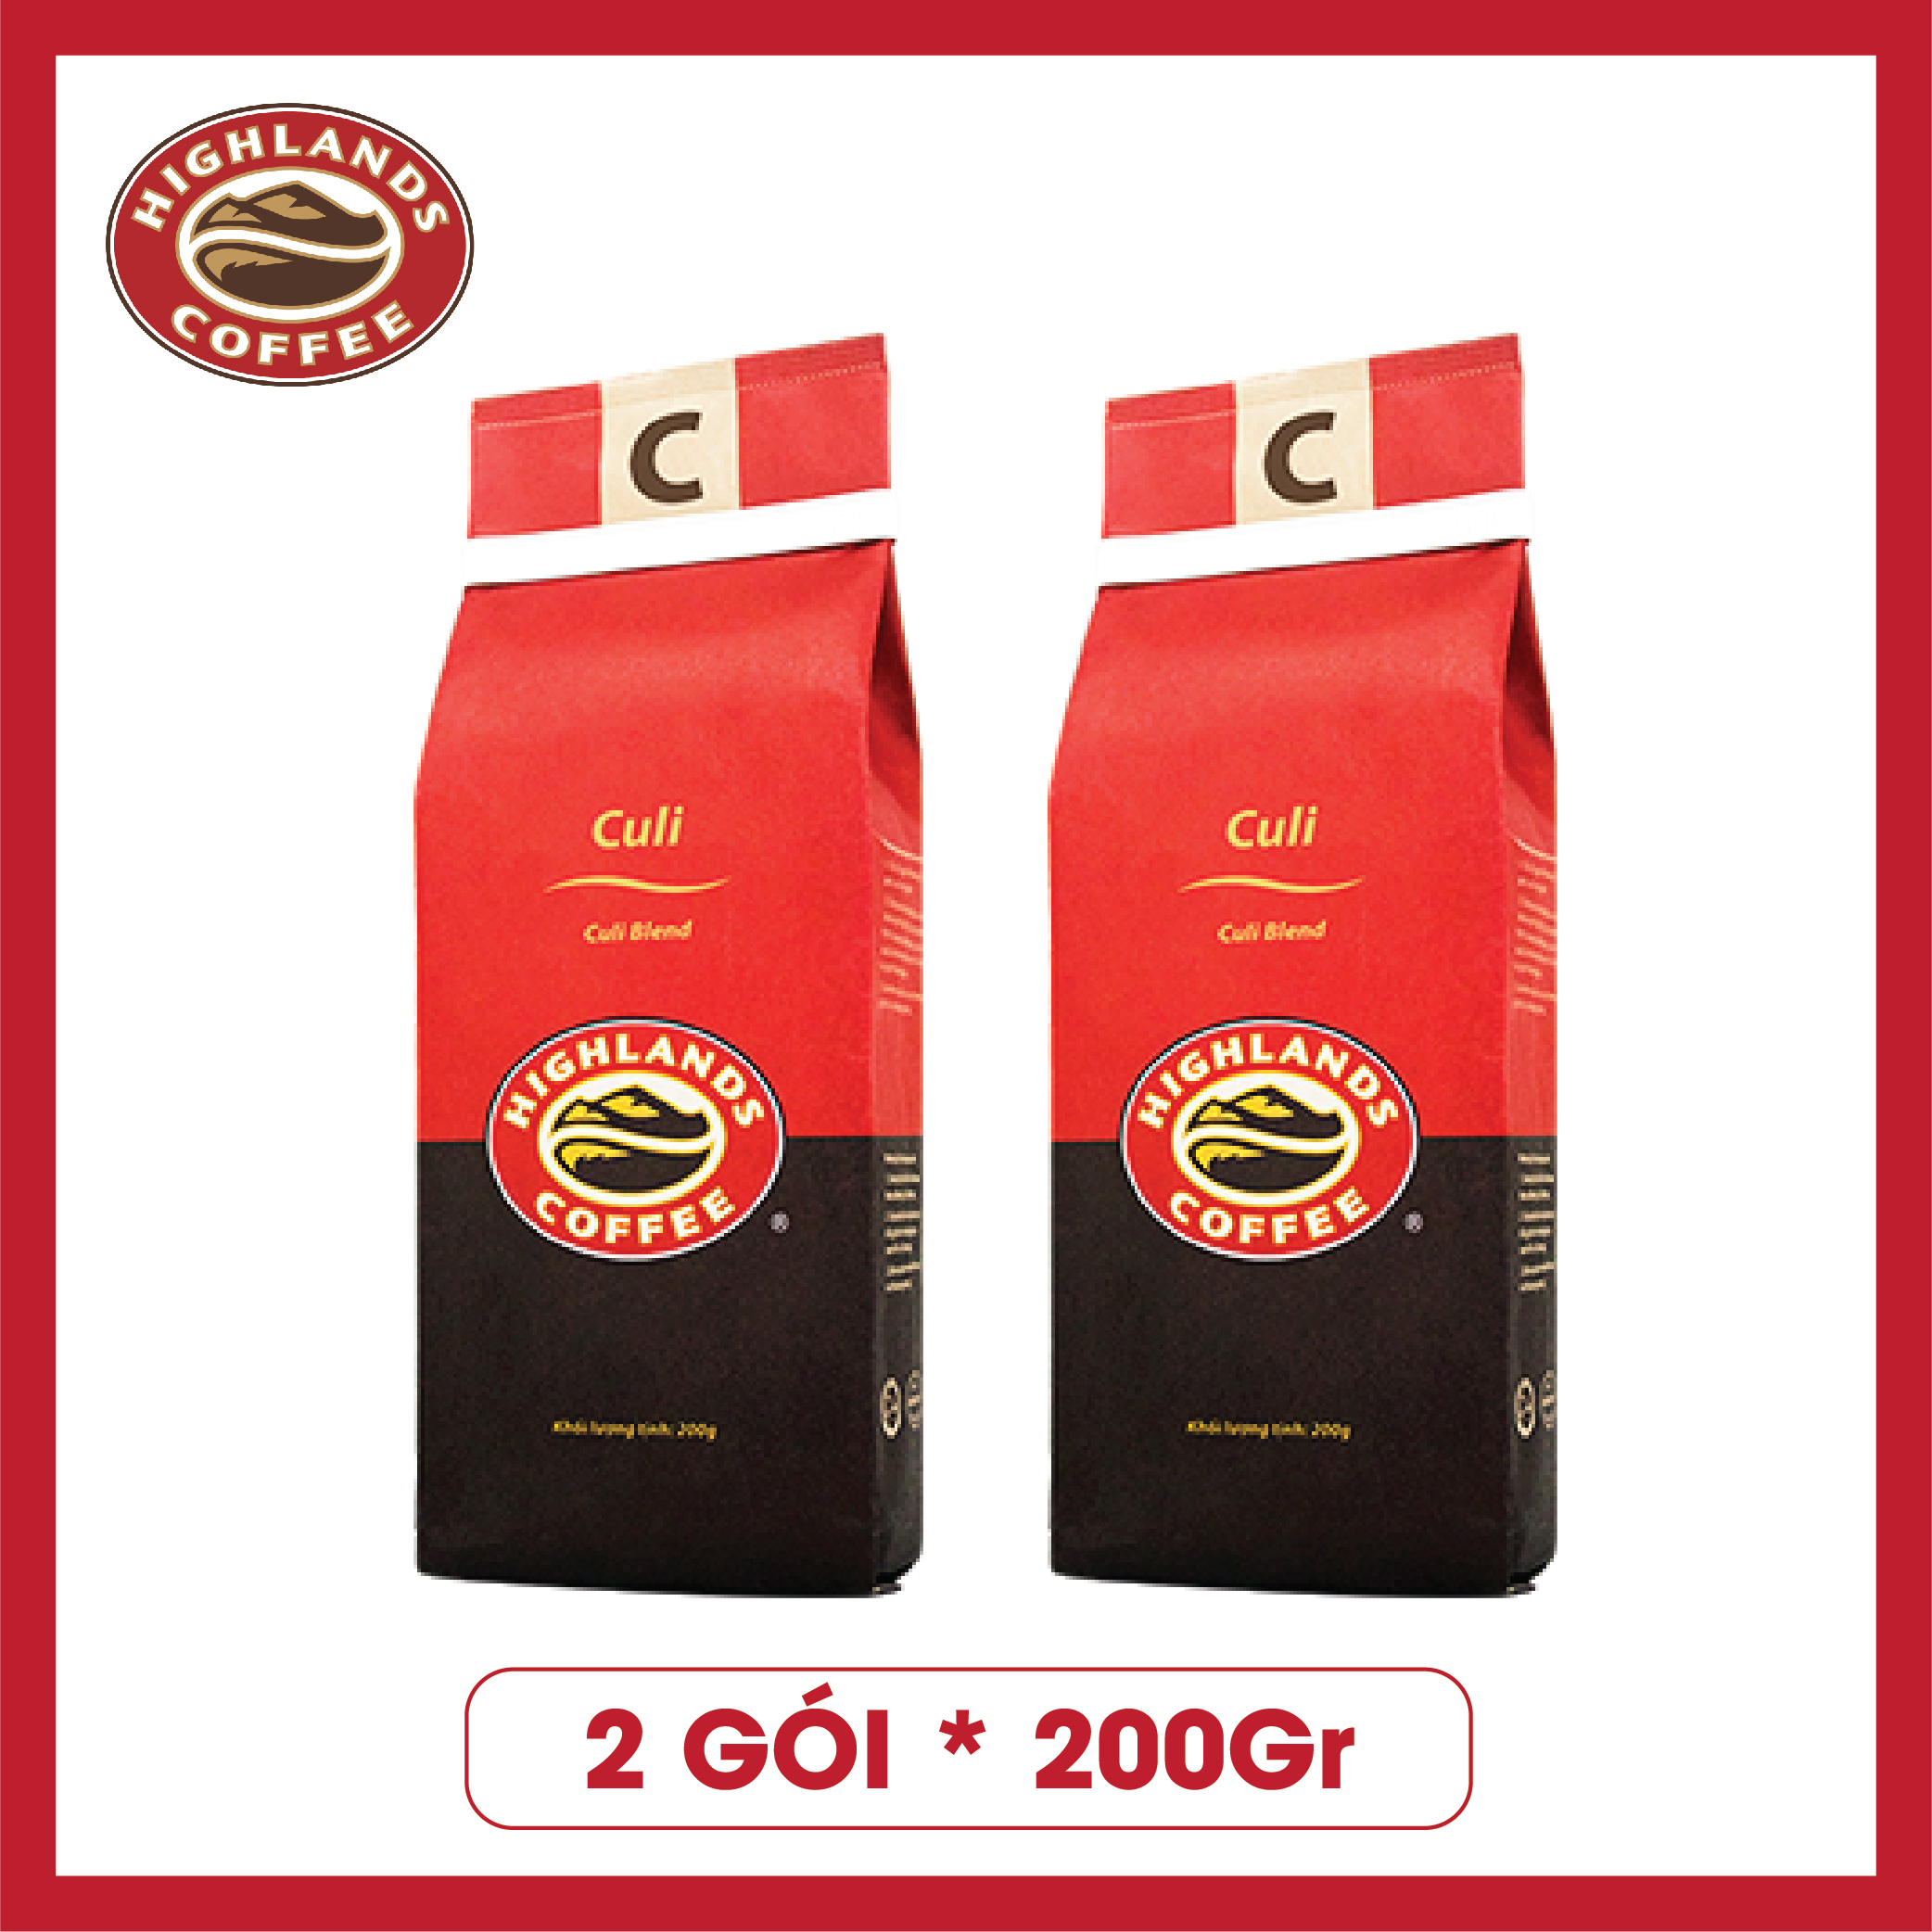 Combo 2 gói Cà Phê Rang Xay Culi Highlands Coffee (200g)